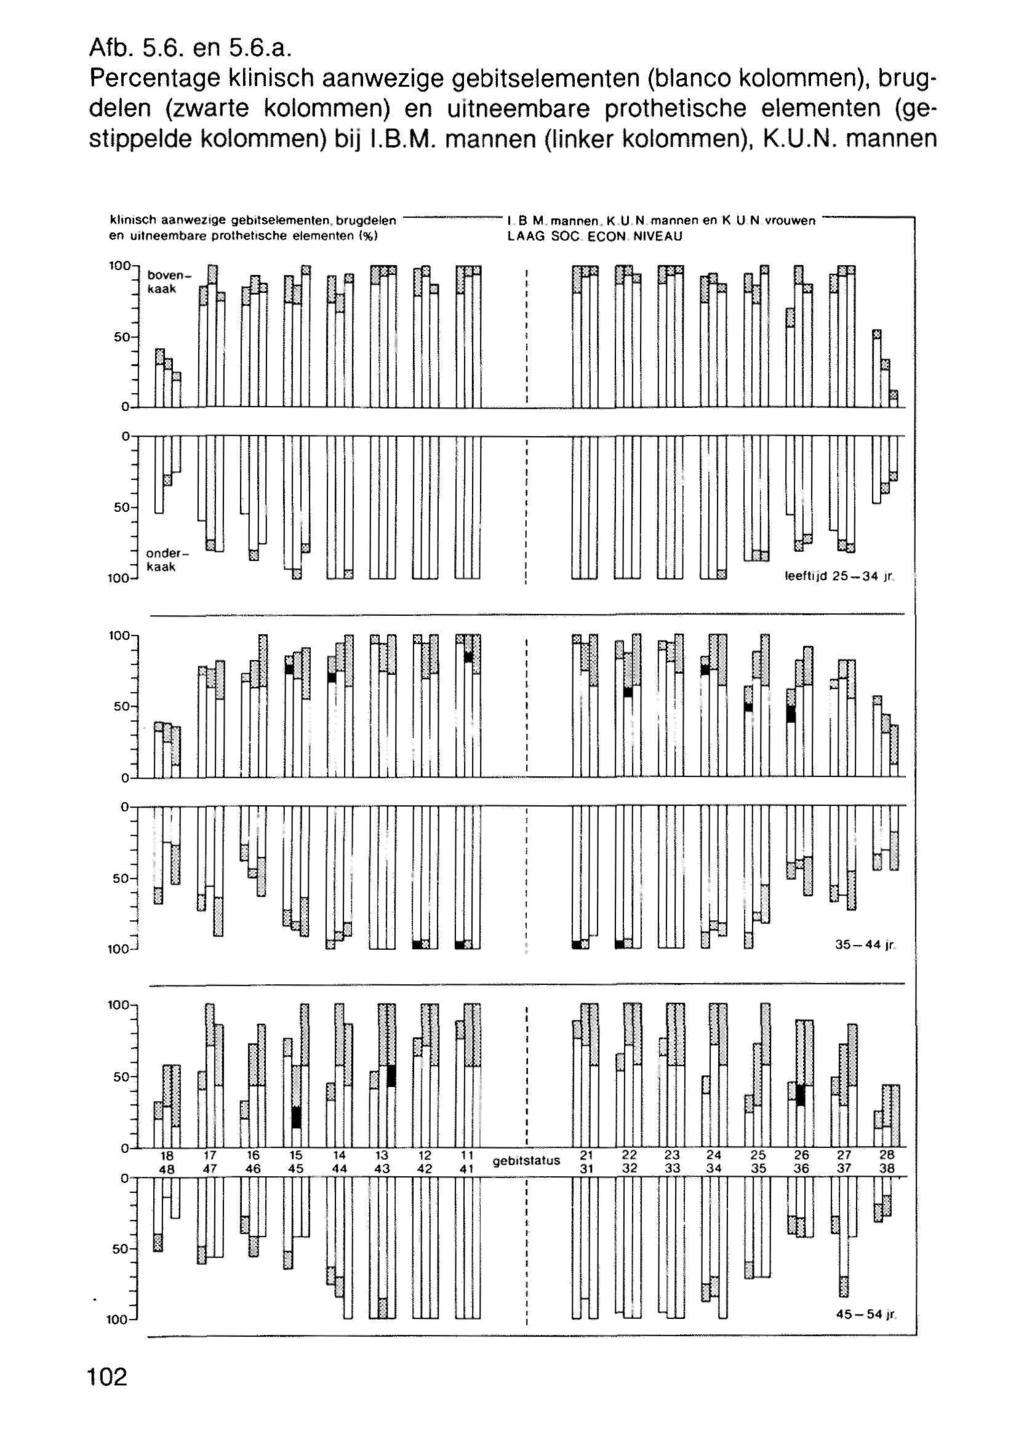 ' Afb. 5.6. en 5.6.a. Percentage klinisch aanwezige gebitselementen (blanco kolommen), brugdelen (zwarte kolommen) en uitneembare prothetische elementen (gestippelde kolommen) bij I.B.M.